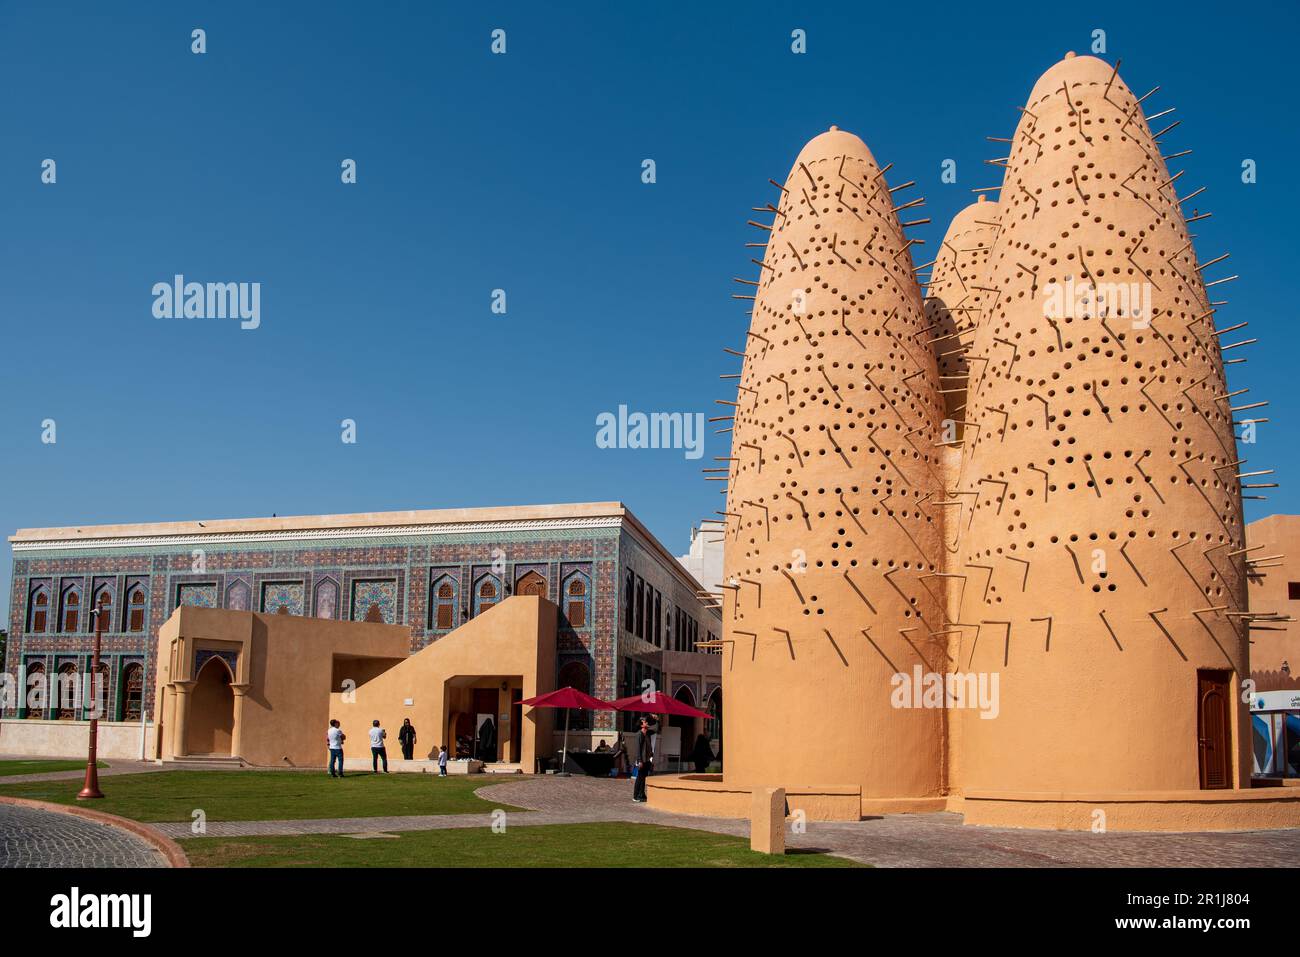 La Mosquée bleue et les trois tours de pigeon dans le village culturel de Katara, Doha, Qatar Banque D'Images